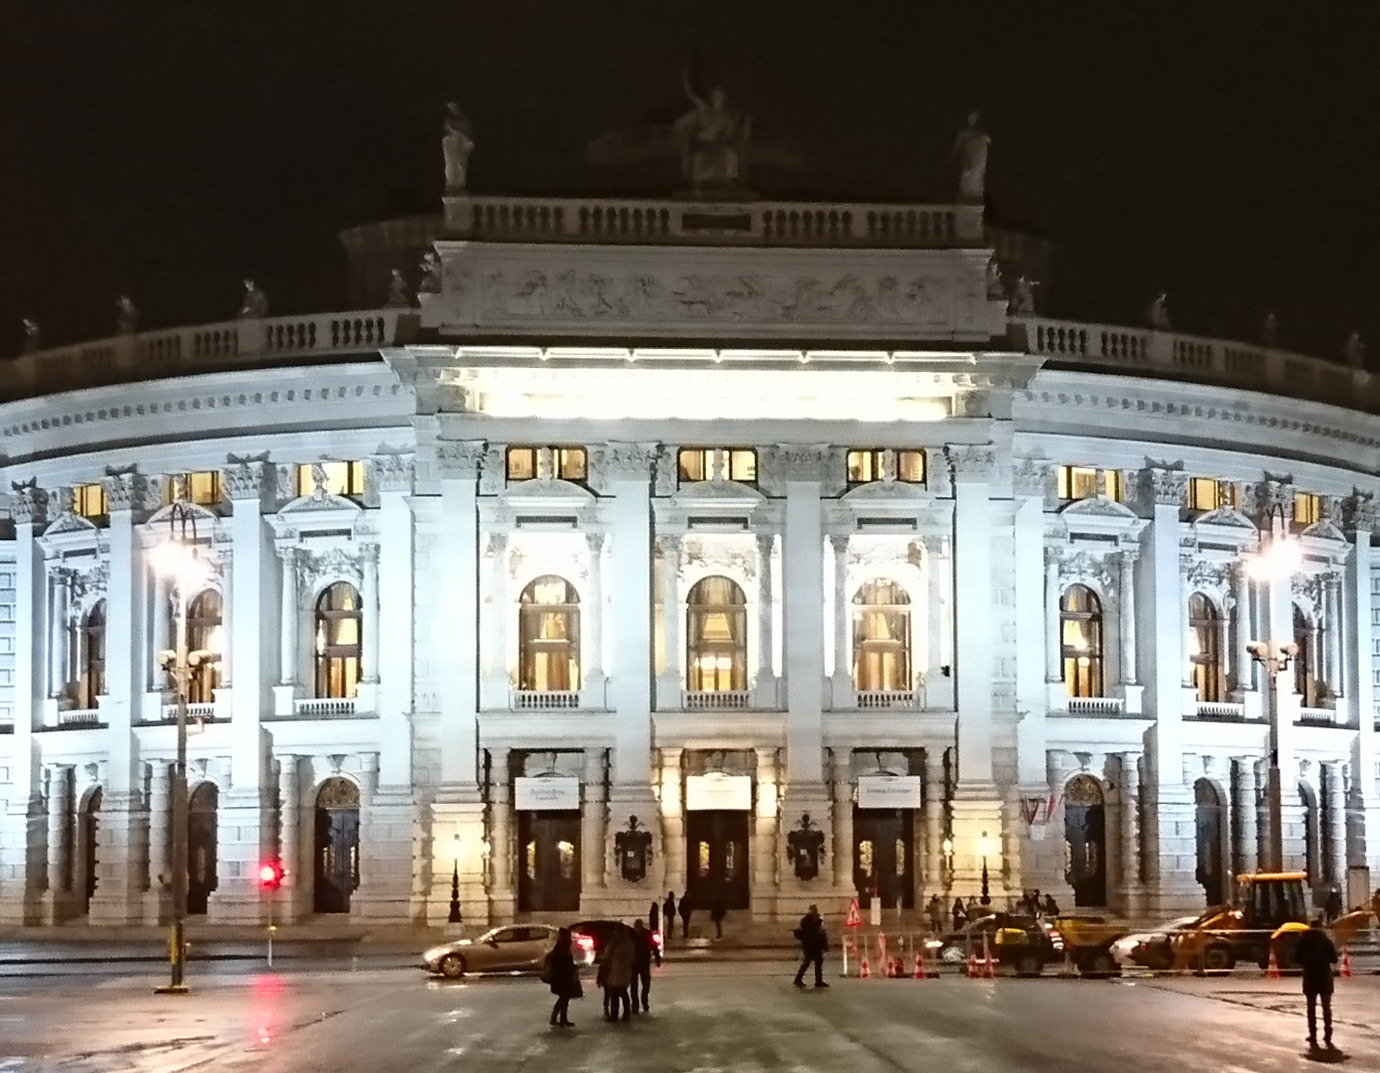 Bericht über das Burgtheater Wien Außenansicht bei Nacht - www.wien-erleben.com